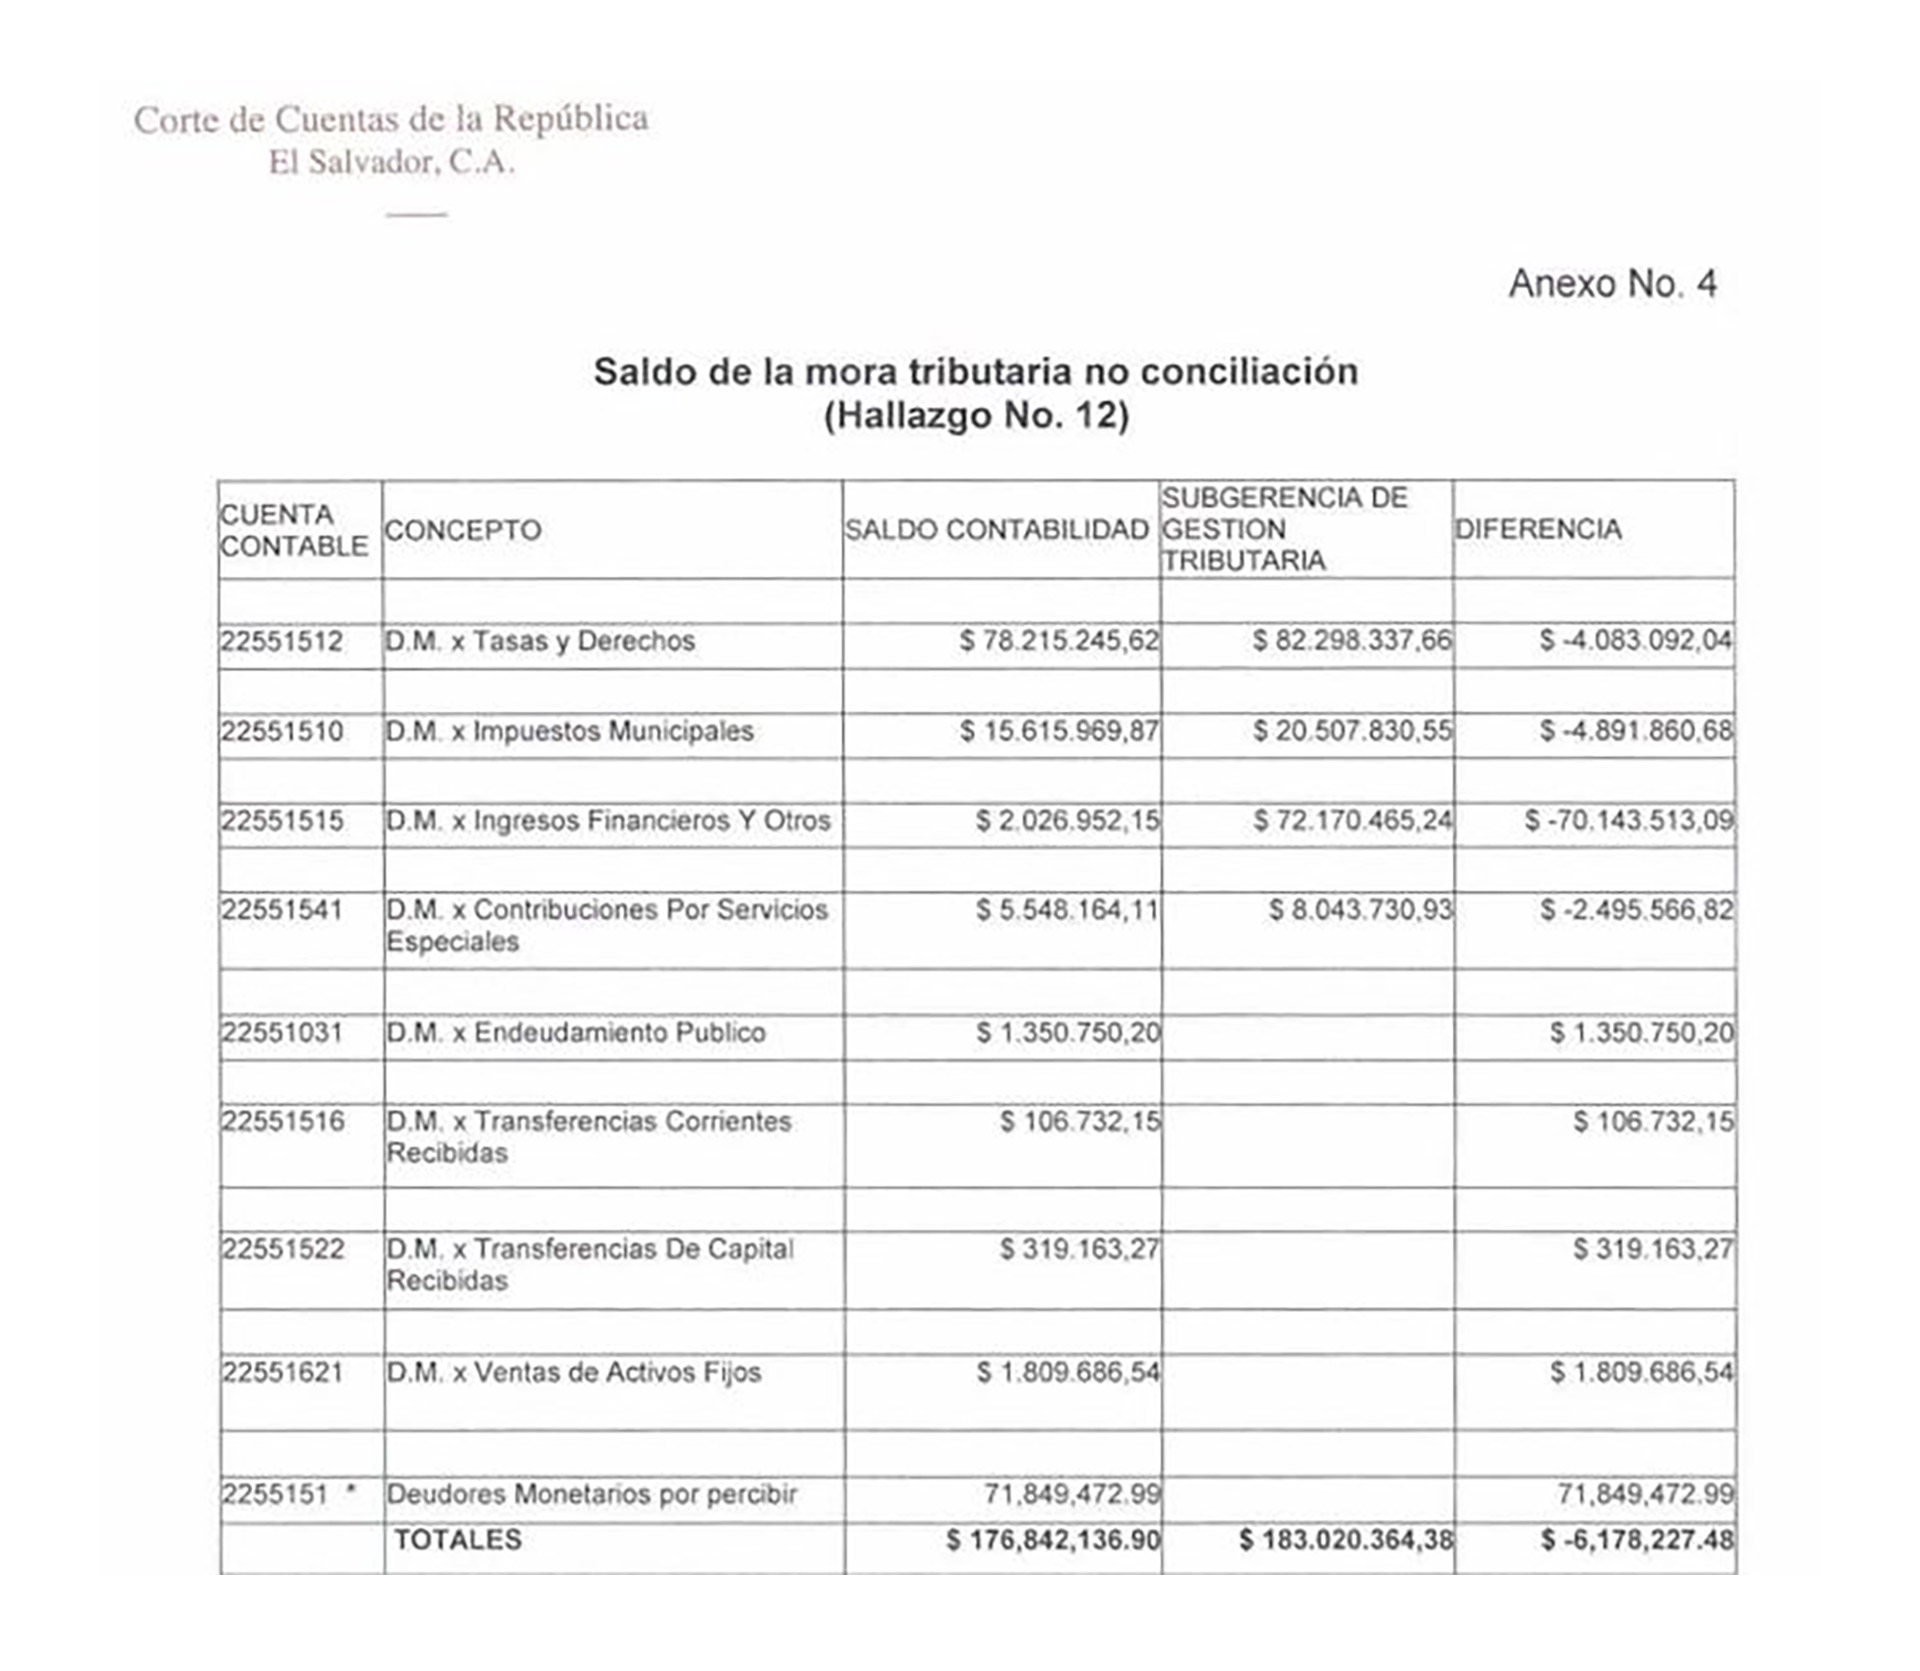 Bukele contraloría: Tomado de informe de la contraloría salvadoreña que cuestiona a Bukele por manejos de la mora tributaria en la alcaldía de San Salvador, donde él fue jefe municipal entre 2015 y 2018.